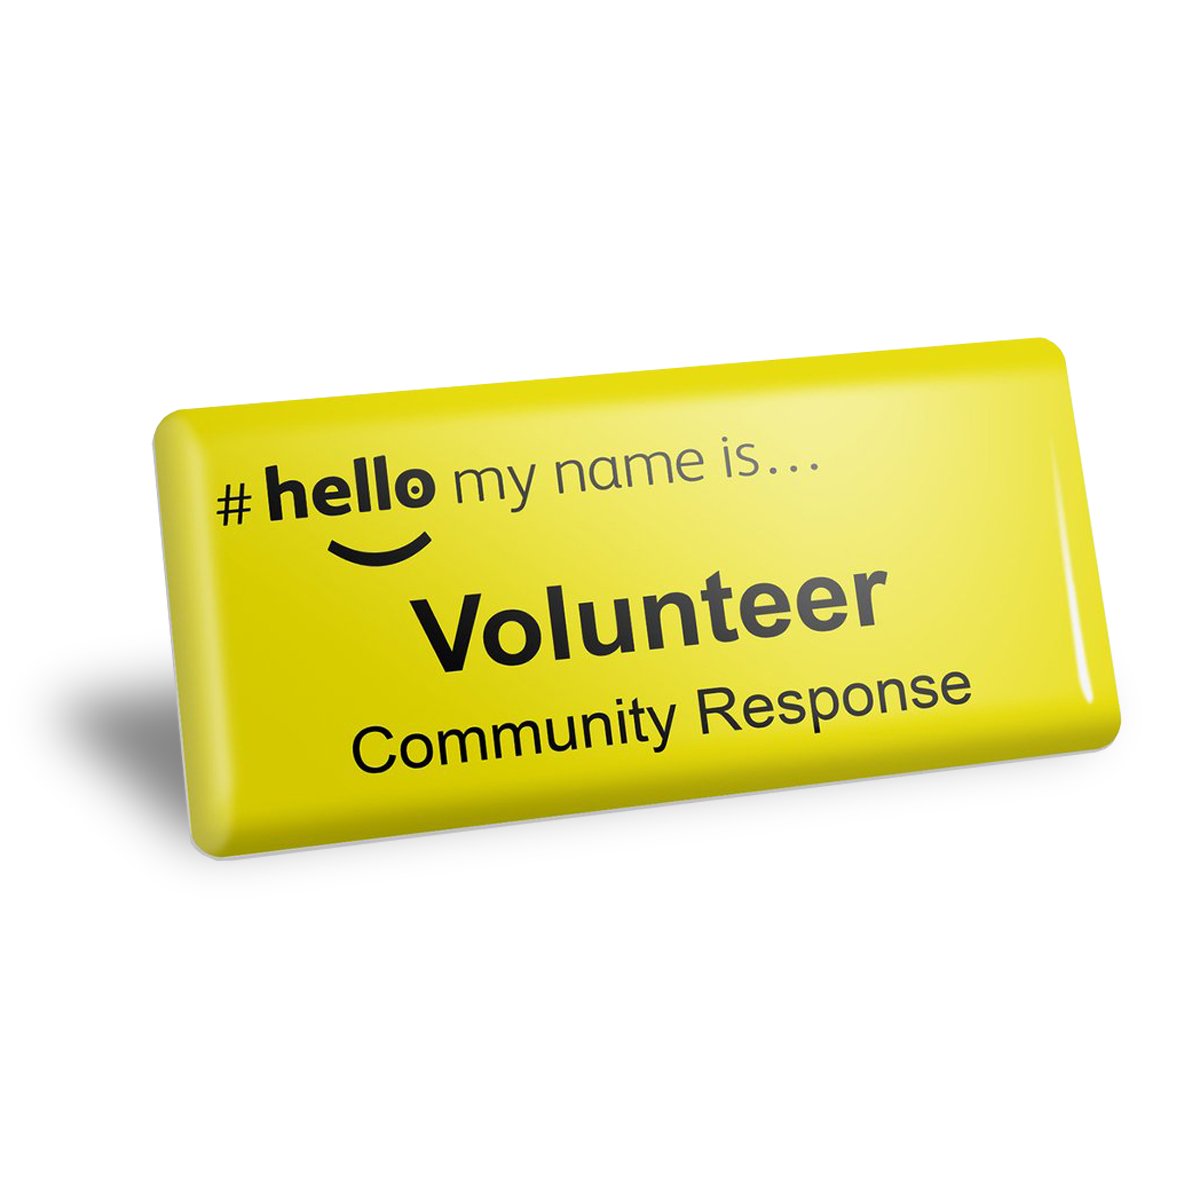 #hellomynameis NHS volunteer badge in yellow